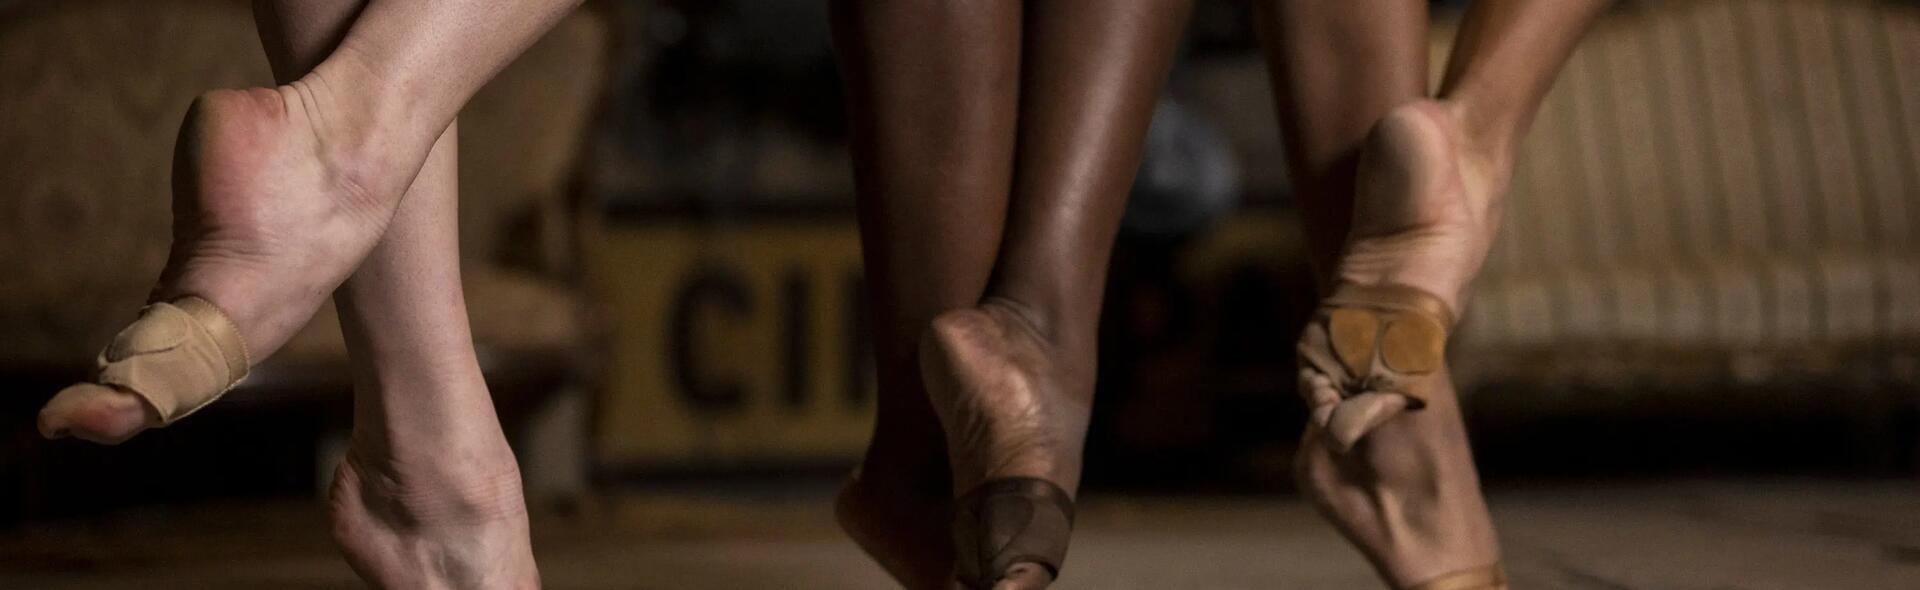 stopy ułożone w pozycji baletowej